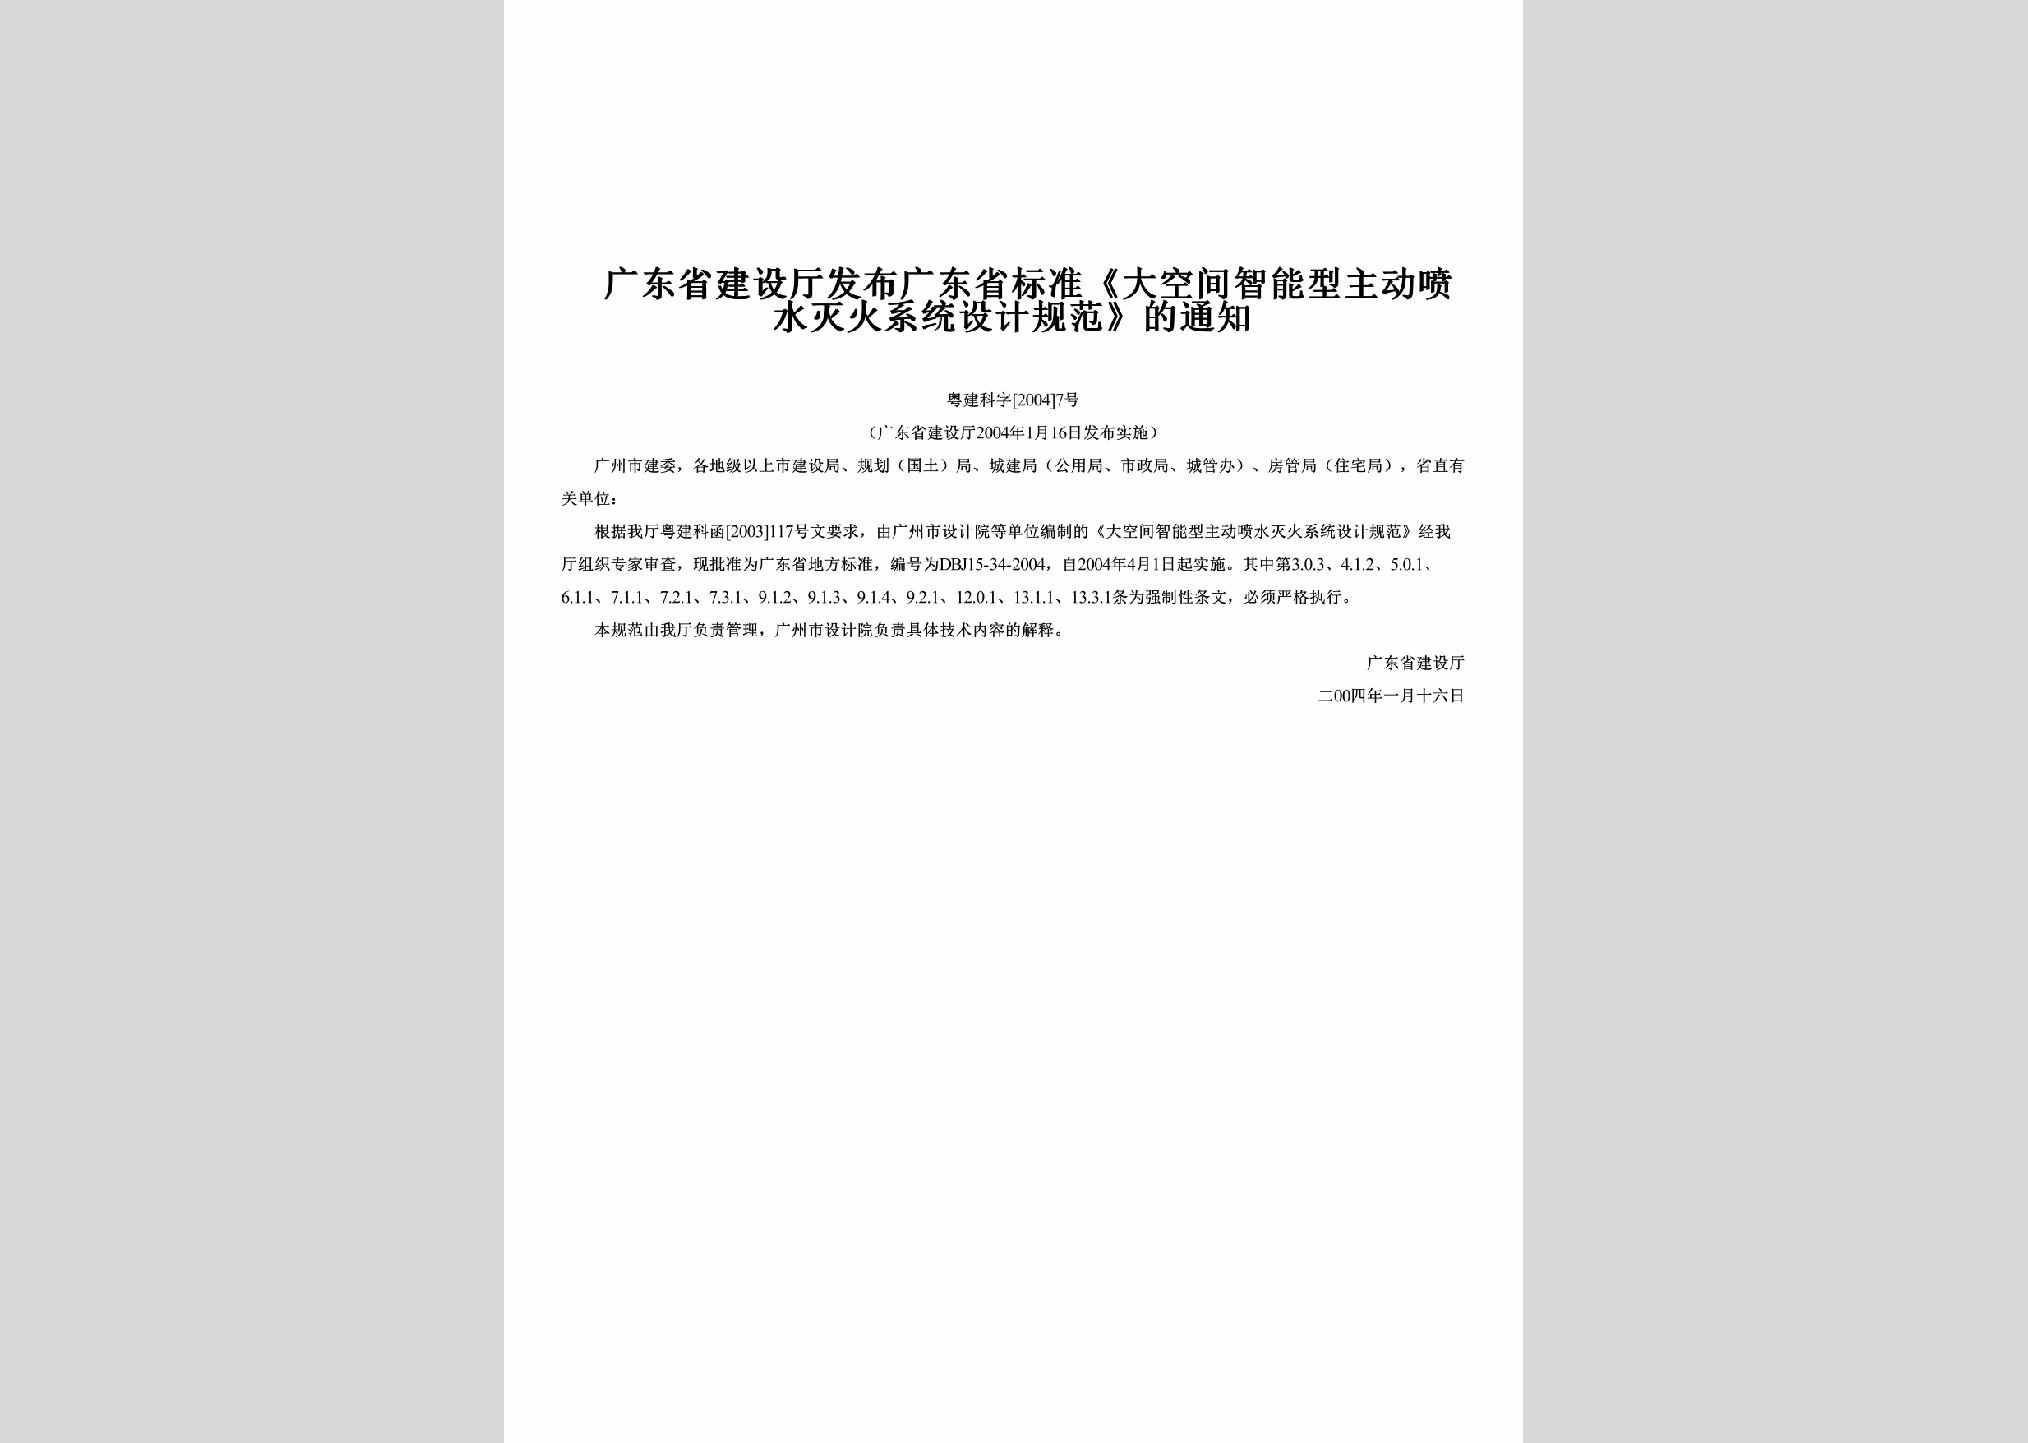 粤建科字[2004]7号：发布广东省标准《大空间智能型主动喷水灭火系统设计规范》的通知